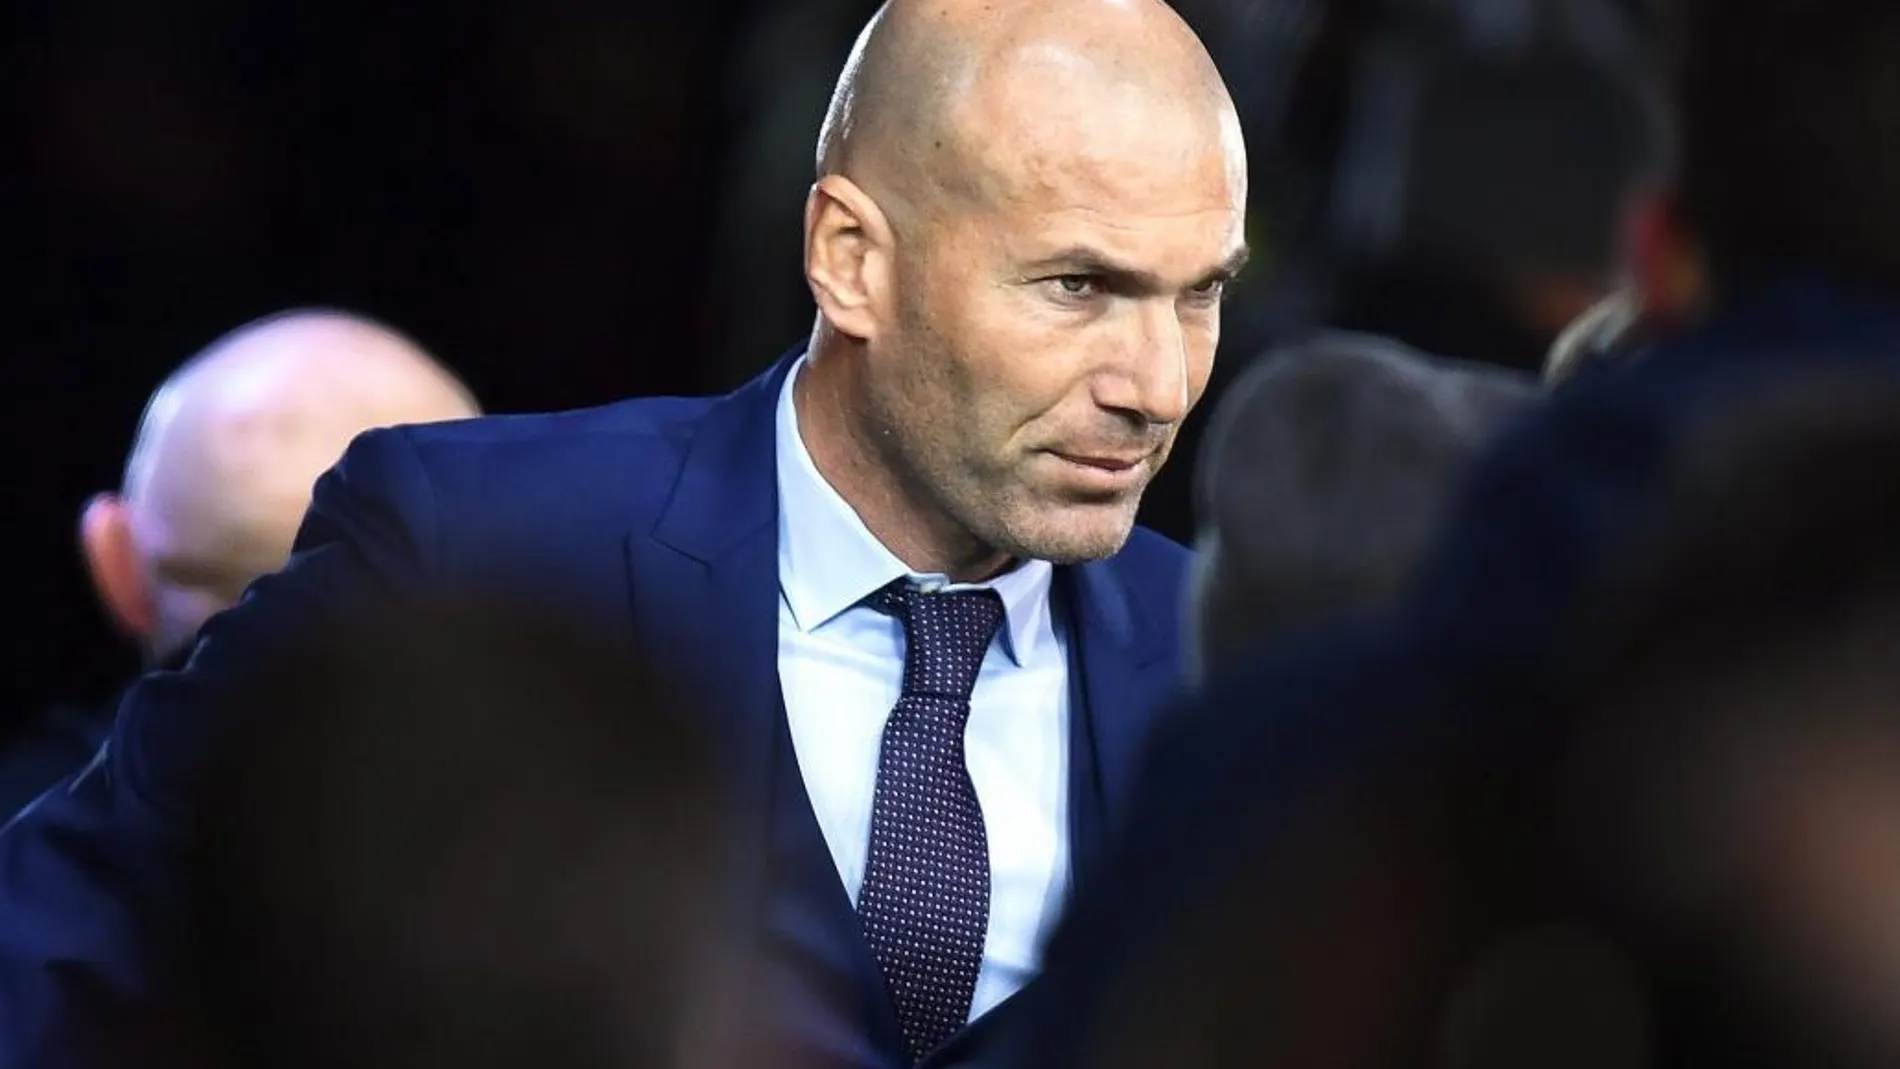 El entrenador francés del Real Madrid, Zidane Zidane, posa ante los fotógrafos a su llegada a la gala 'The Best', el pasado 9 de enero de 2017